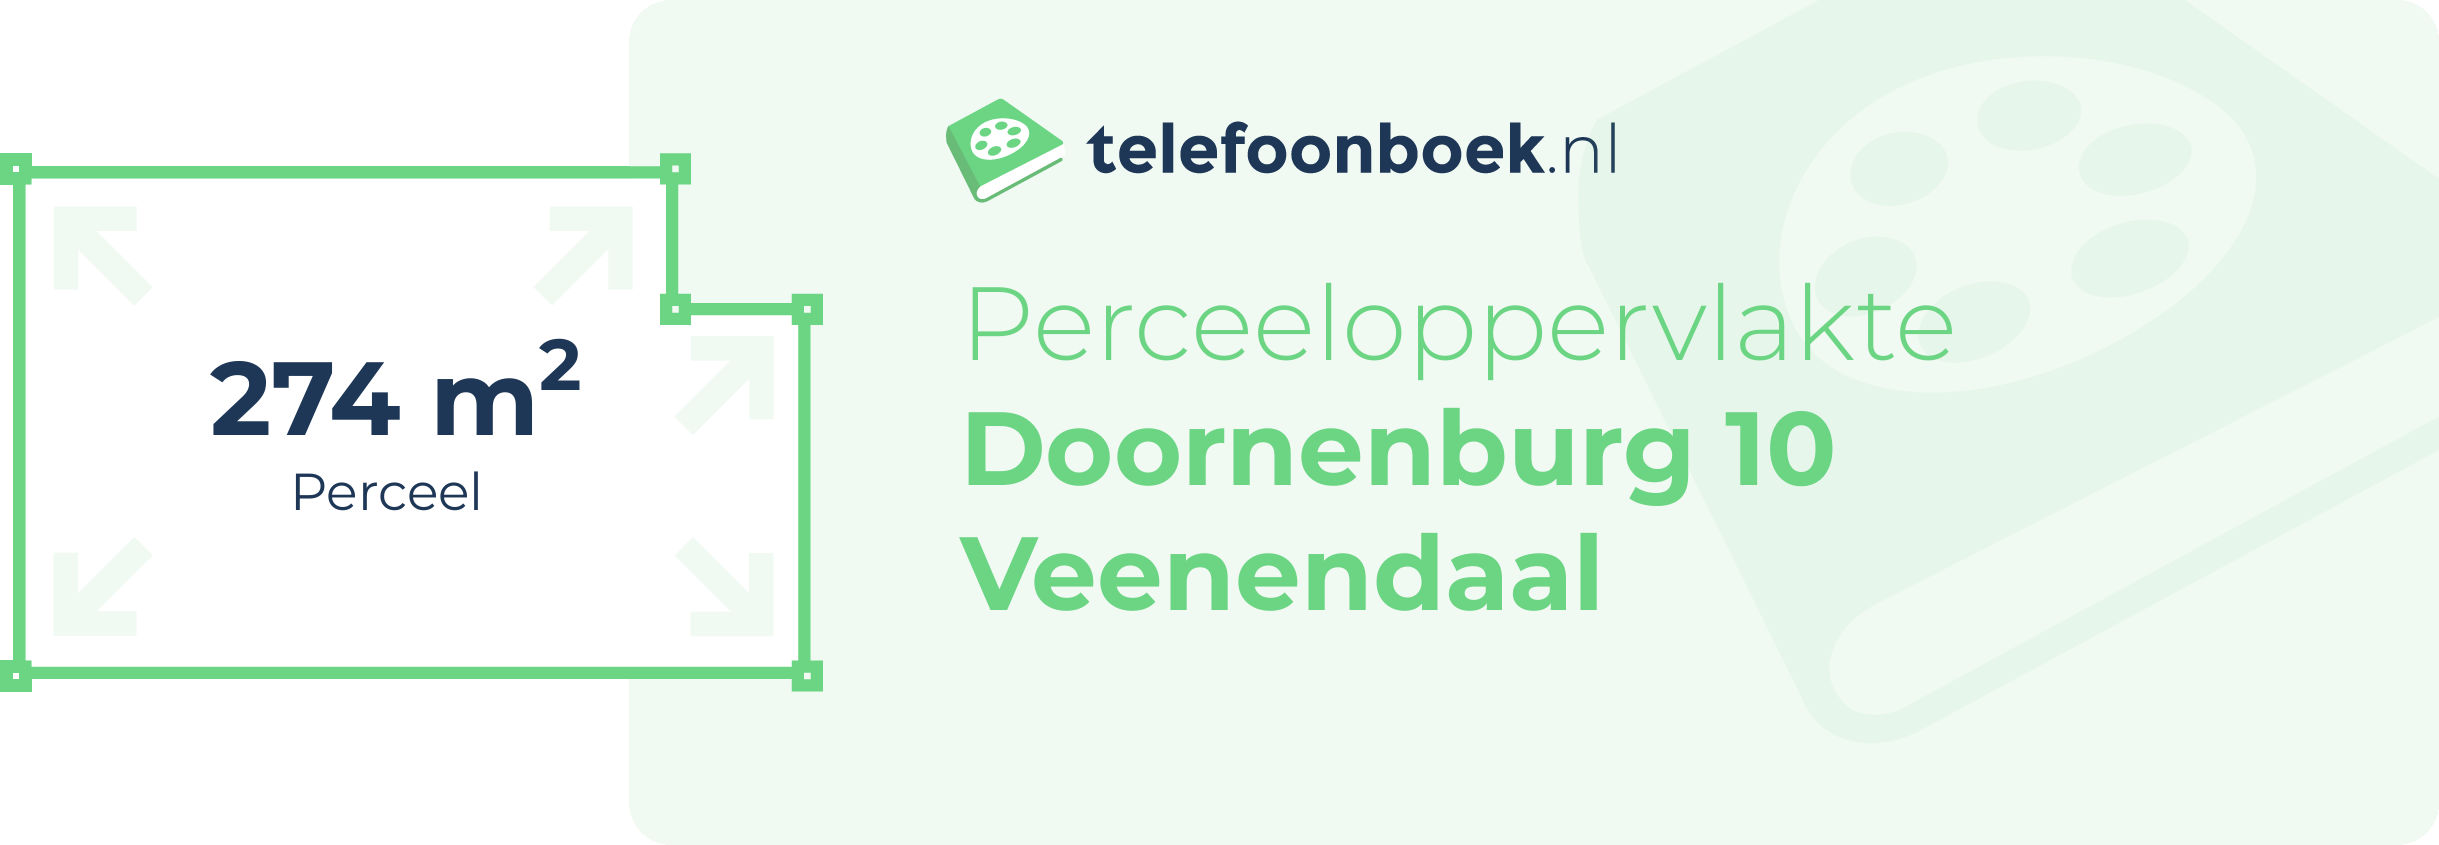 Perceeloppervlakte Doornenburg 10 Veenendaal